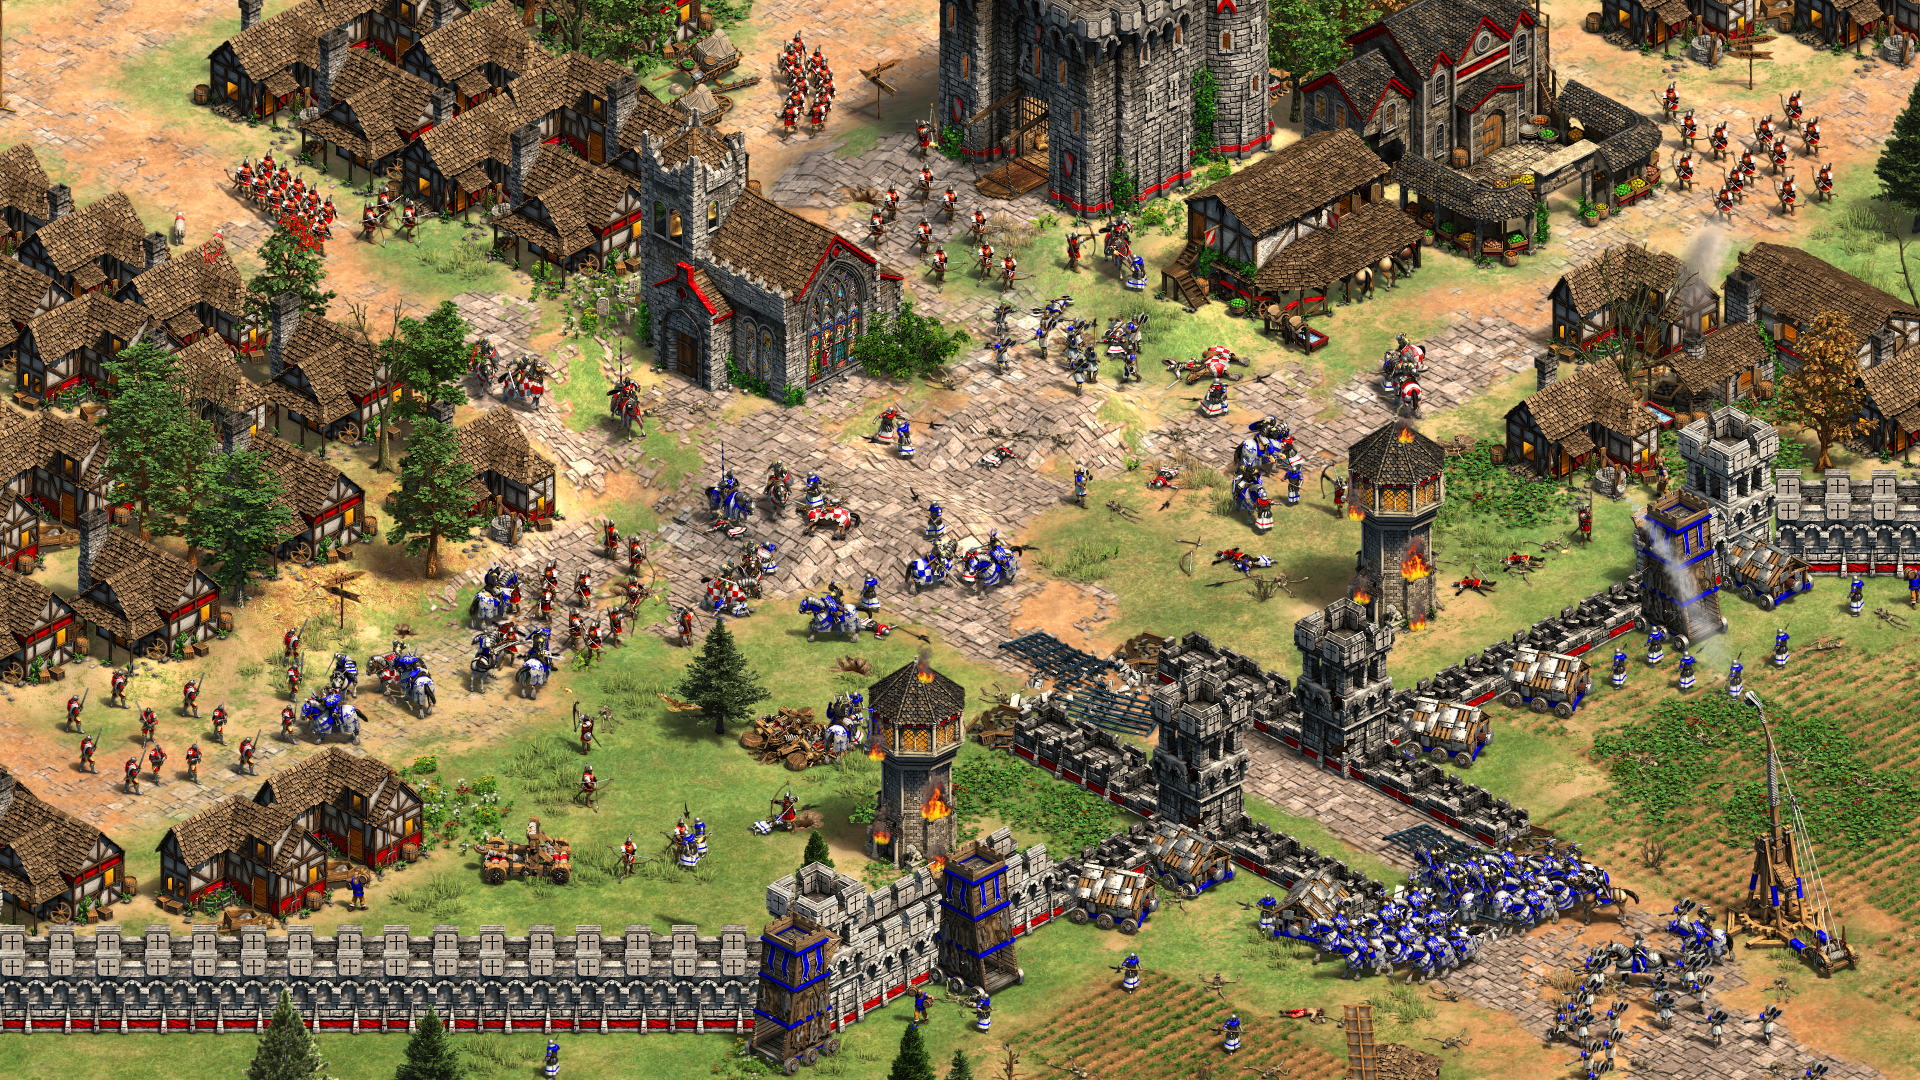 Imagen dentro del juego, de una ciudad siendo asediada